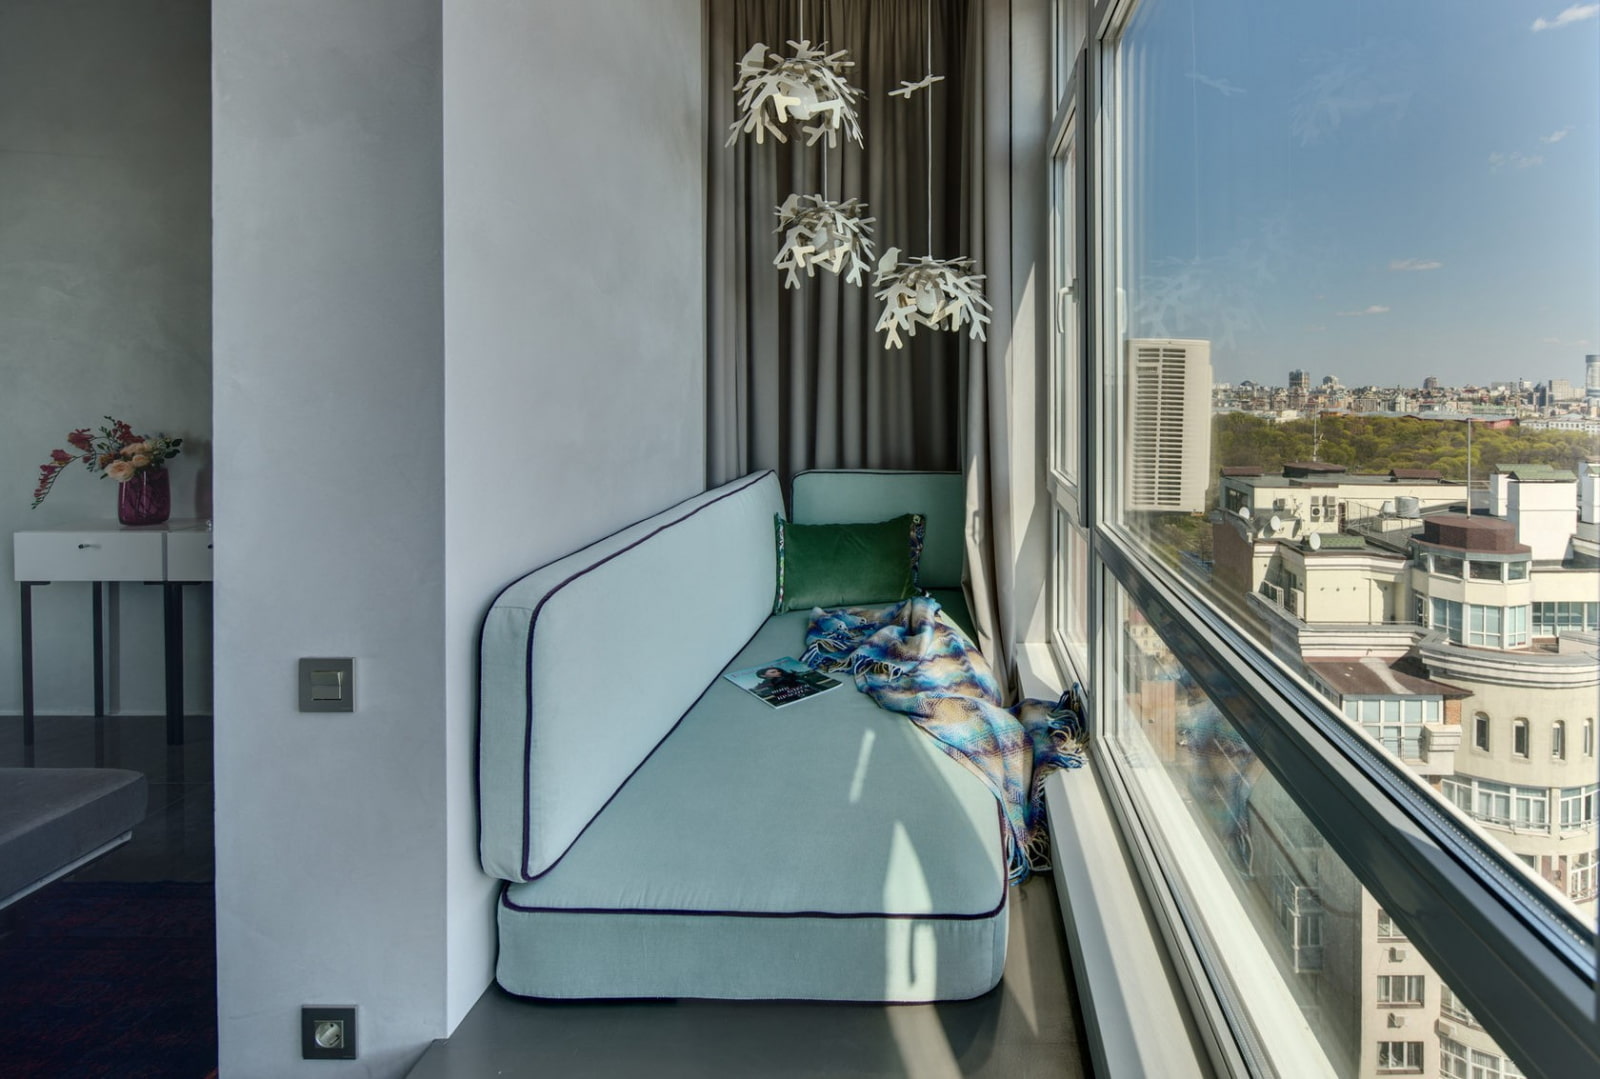 Стильная лоджия и балкон: дизайн интерьера для разных случаев